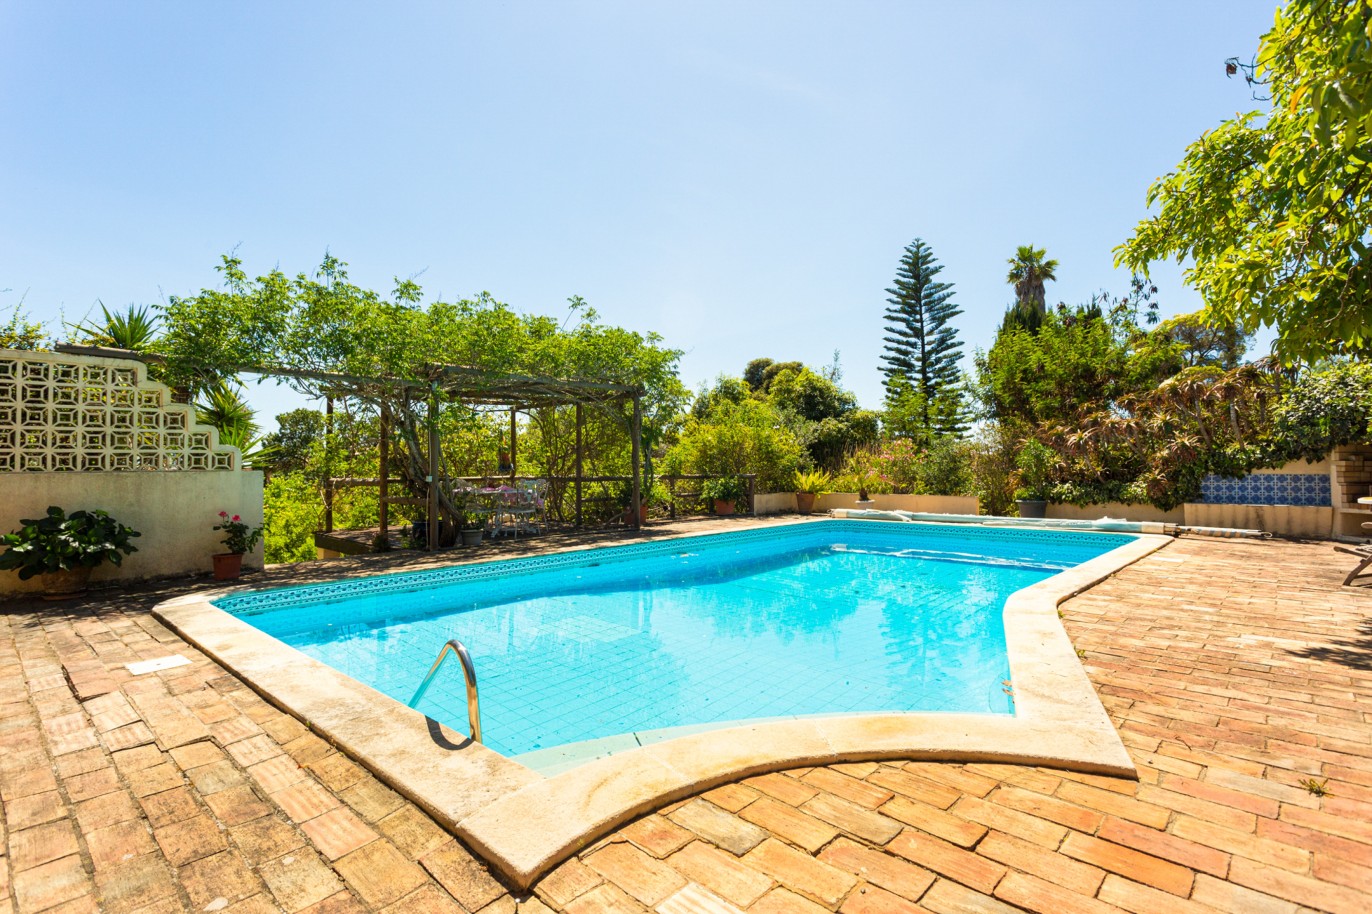 Moradia V3+1, com piscina, para venda, em Carvoeiro, Algarve_223799